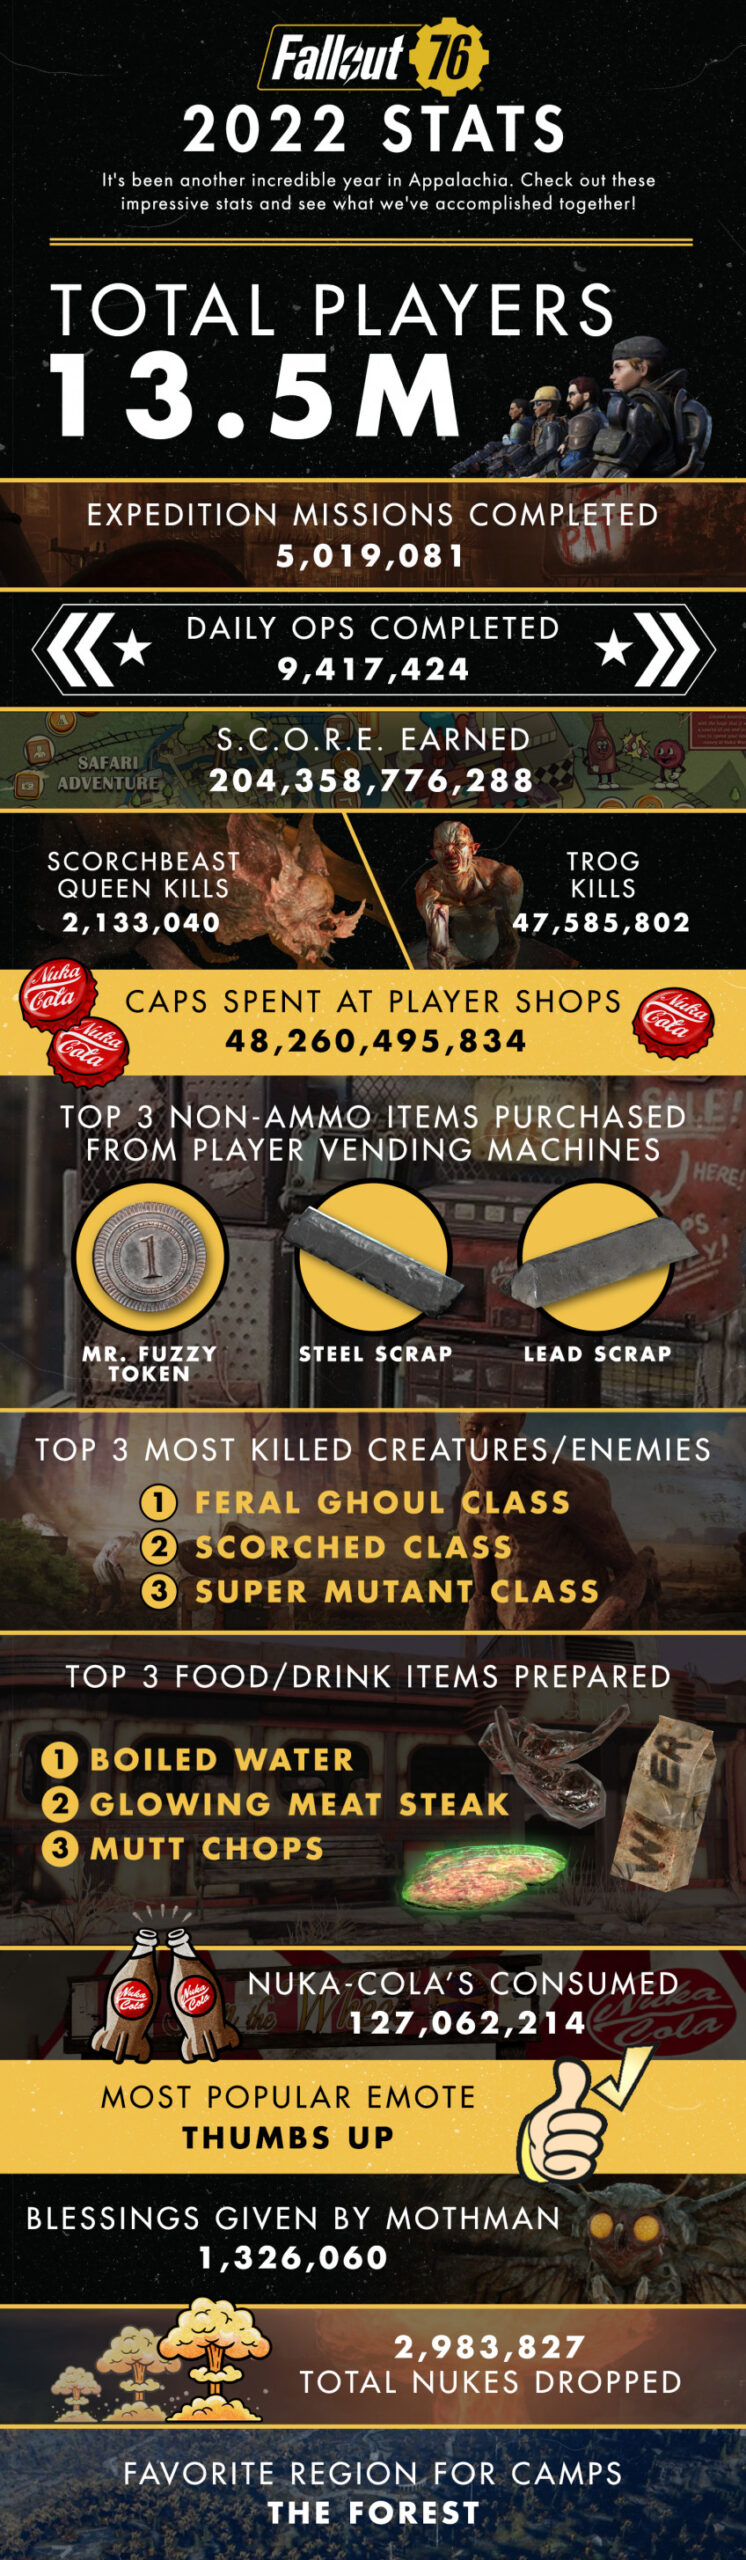 Число игроков в Fallout 76 перевалило за 13,5 млн - Bethesda поделилась статистикой: с сайта NEWXBOXONE.RU